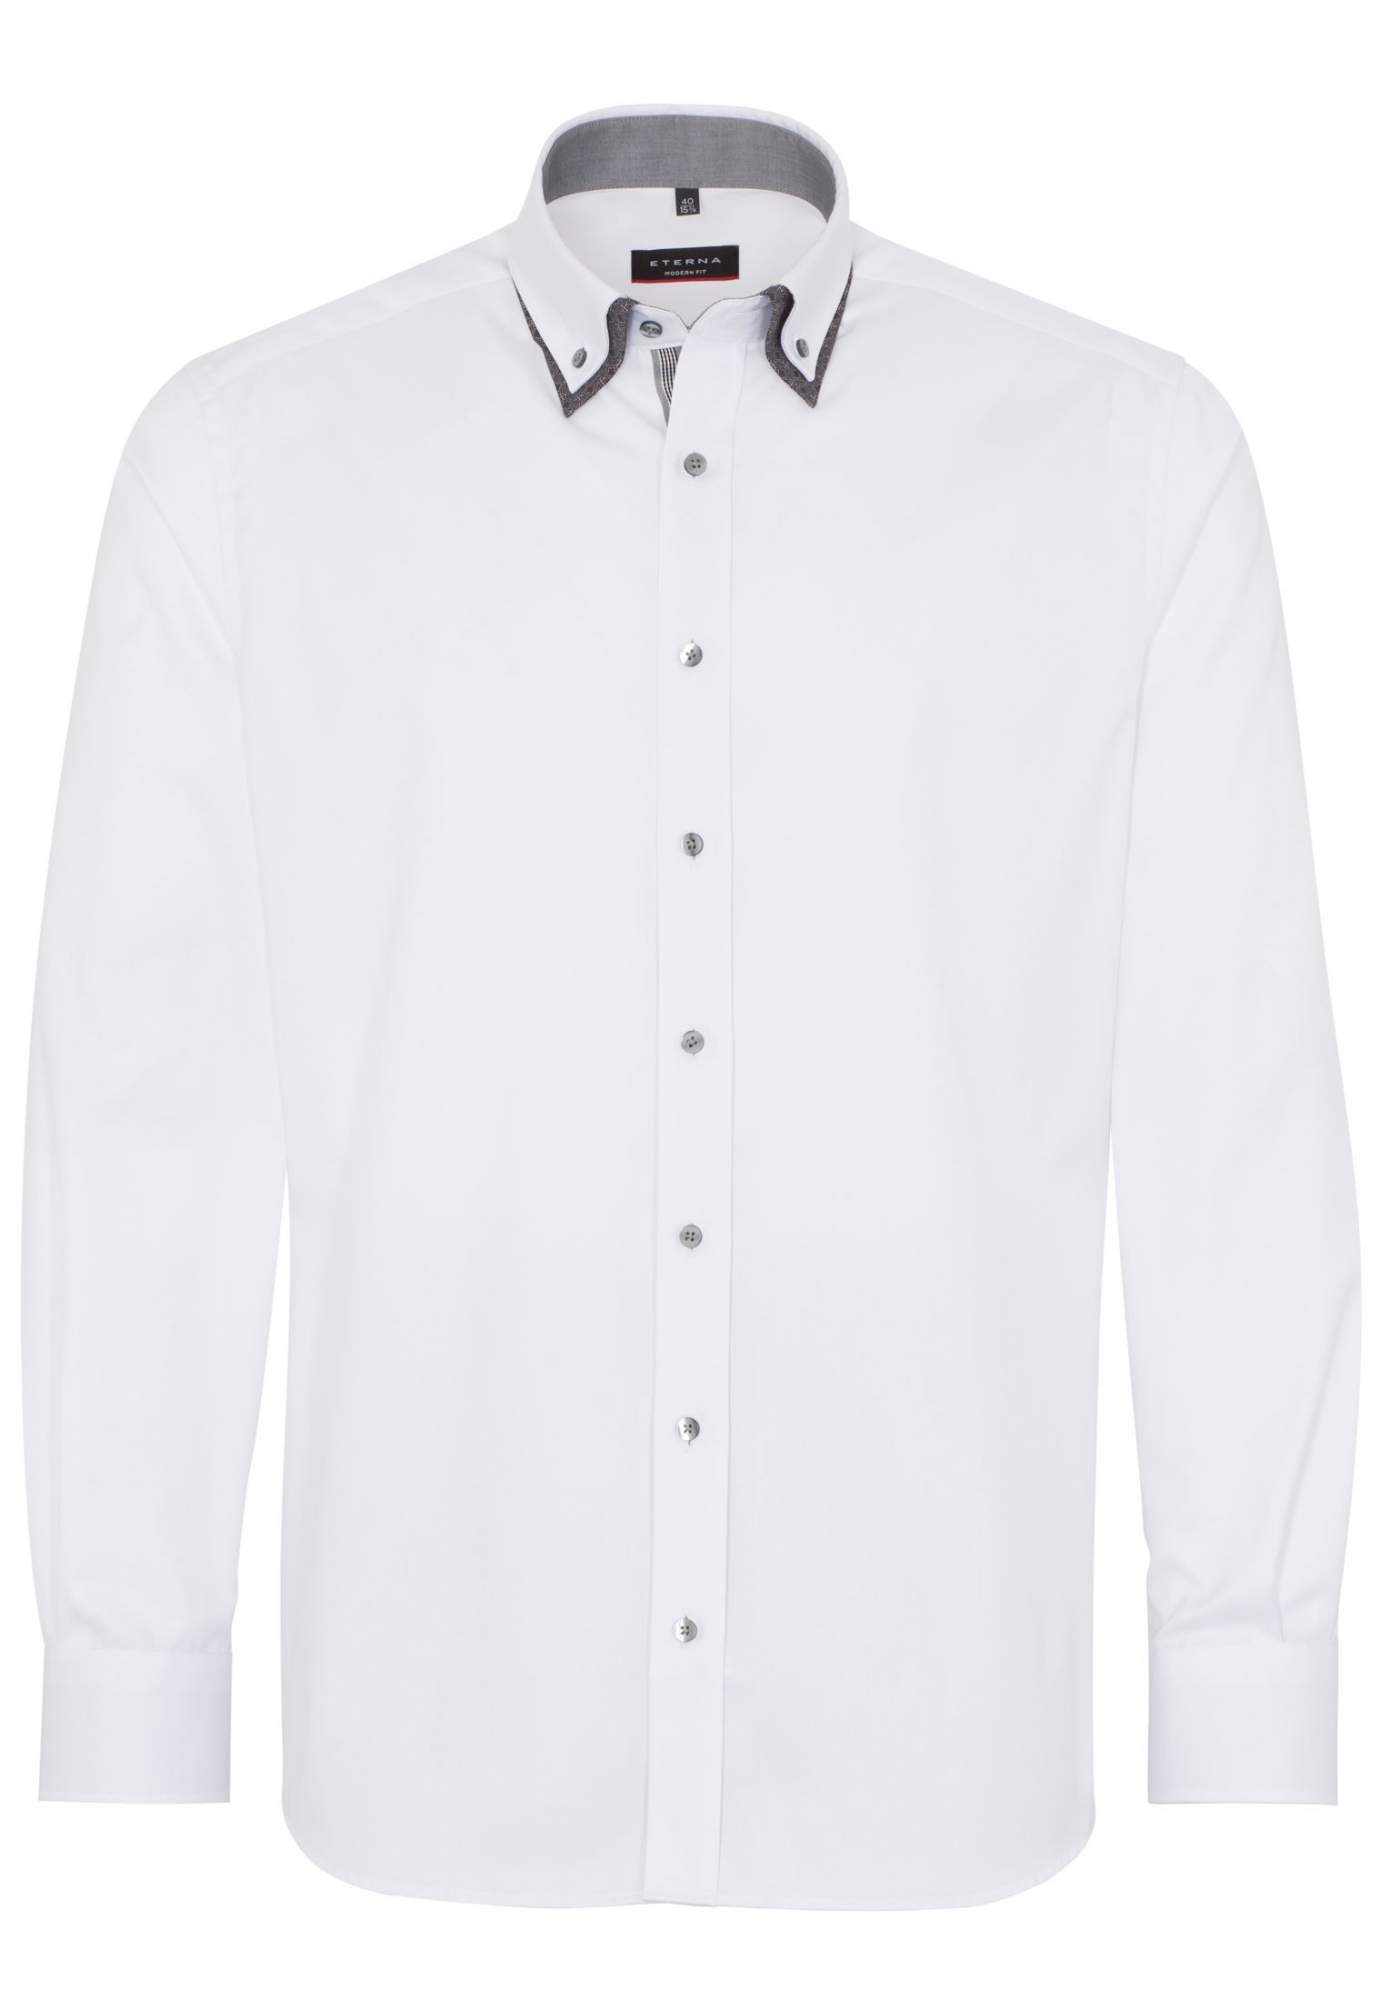 Рубашка мужская ETERNA 8817-00-XD44 белая 41 - купить в Икона Стиля, цена на Мегамаркет